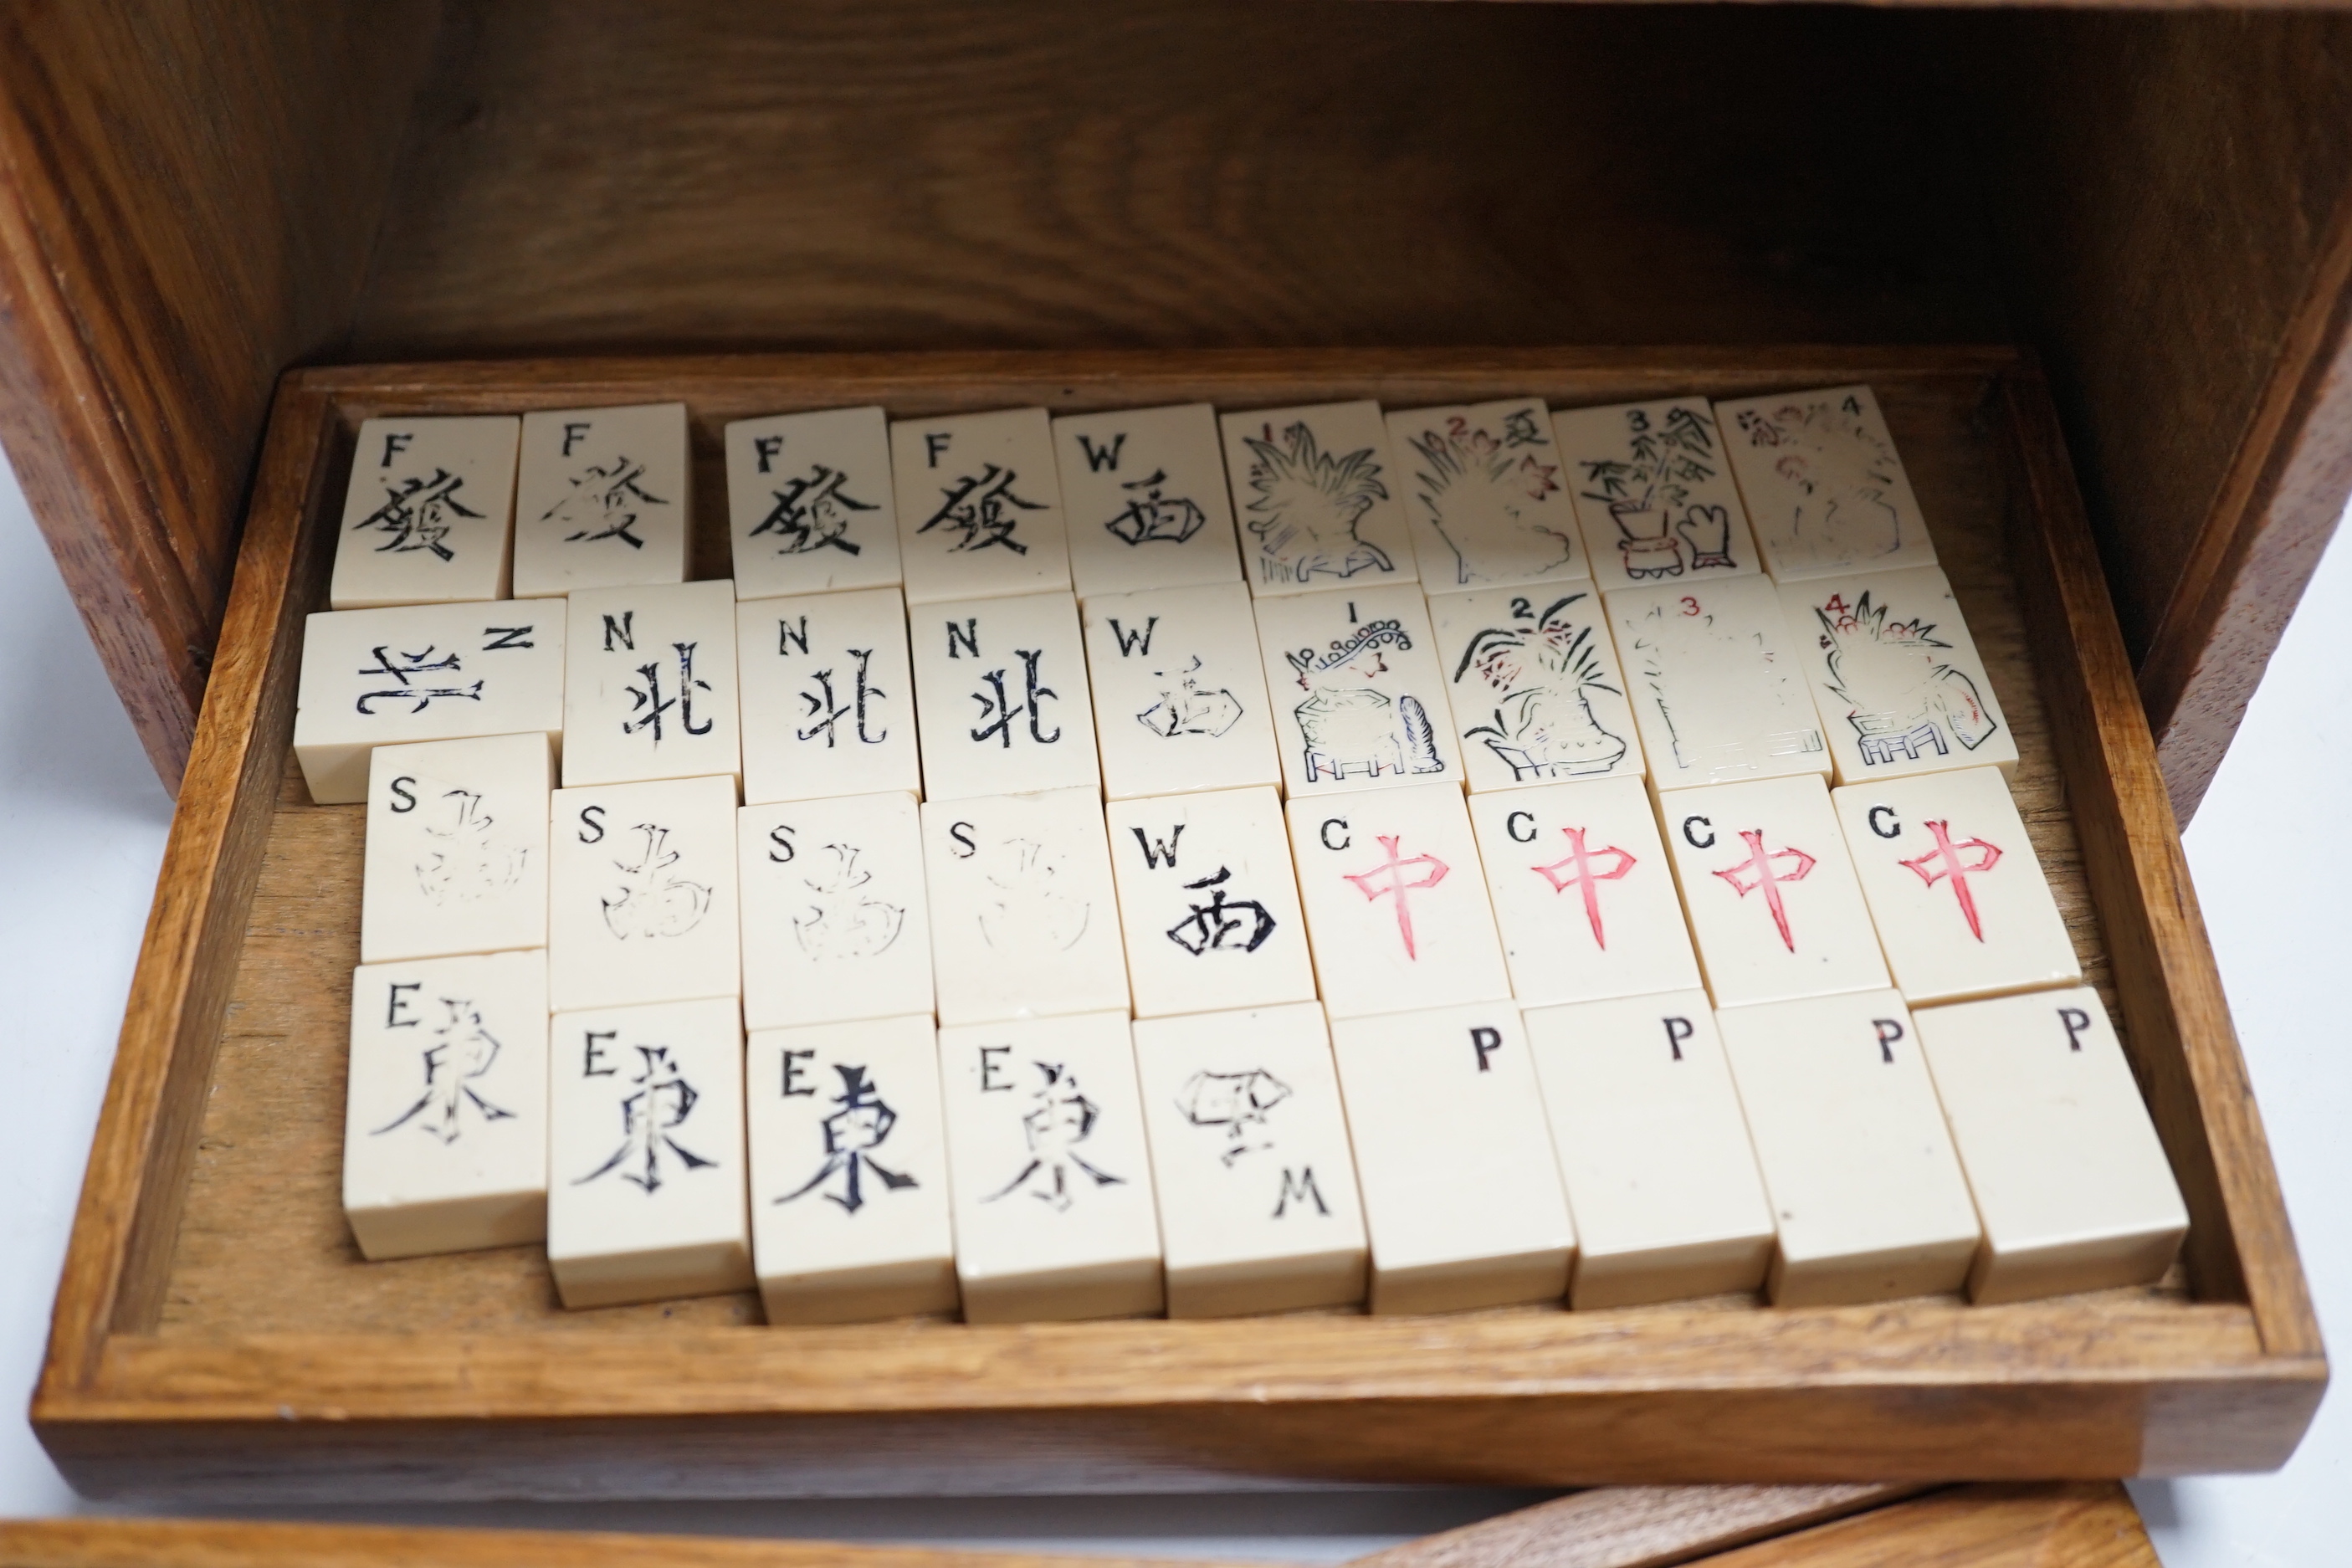 A Chinese mahjong set